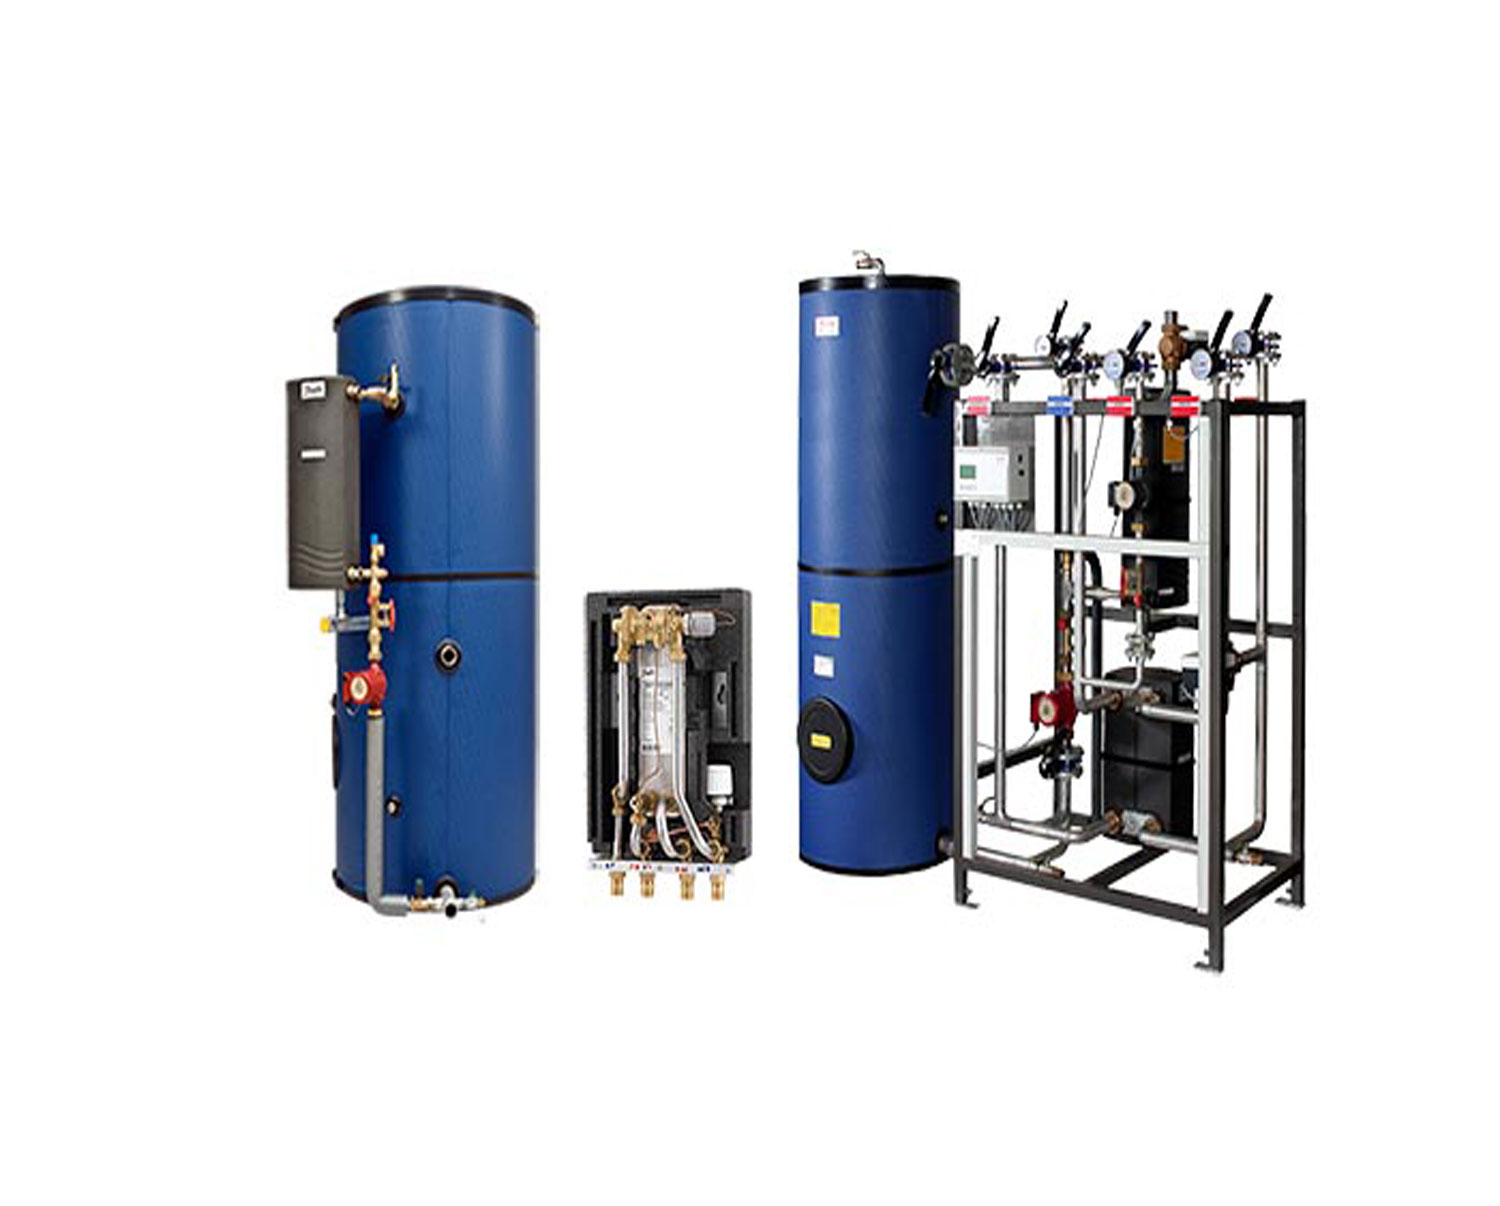 Trinkwassererwärmungssysteme von Danfoss Wärmetechnik